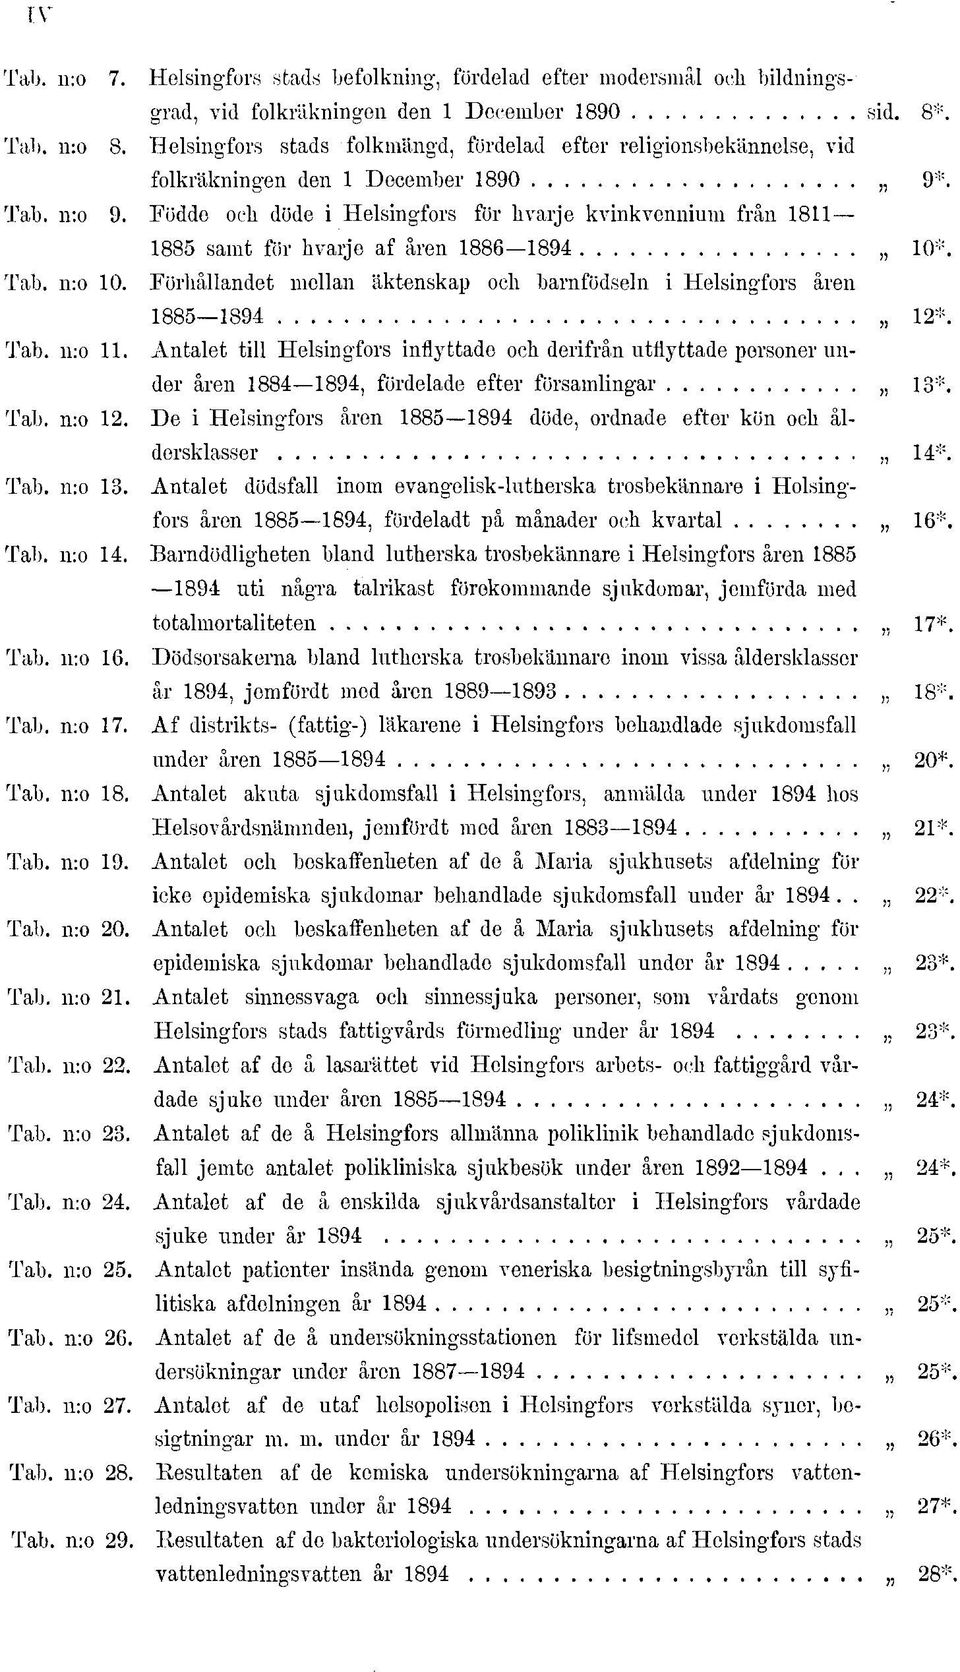 Födde och döde i Helsingfors för hvarje kvinkvennium från 8 885 samt för hvarje af åren 886 894 0*. Tab. n:o 